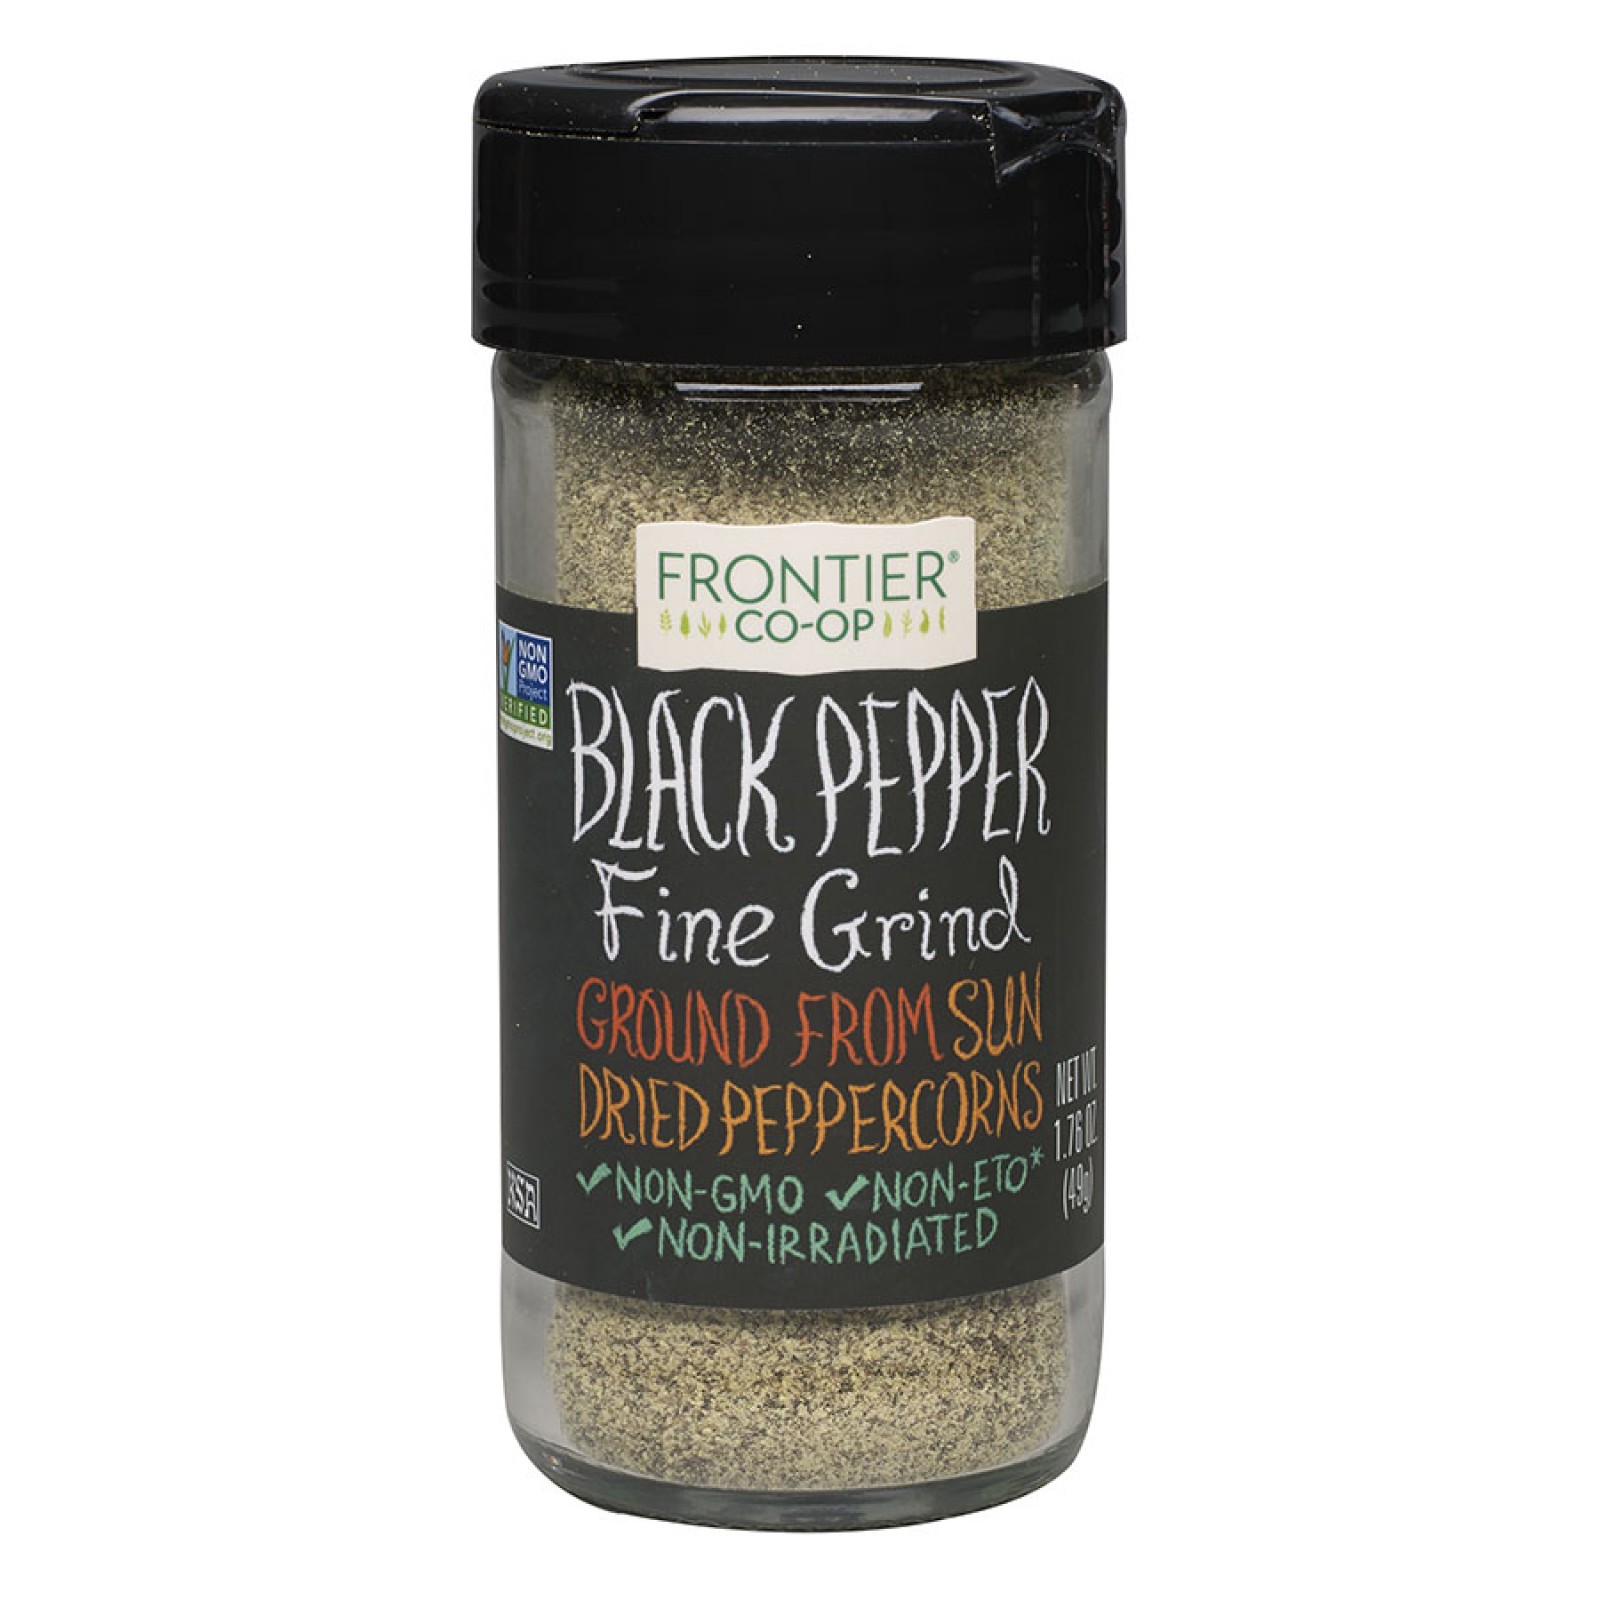 Frontier Fine Grind Black Pepper 1.76 oz. - Frontier Co-op